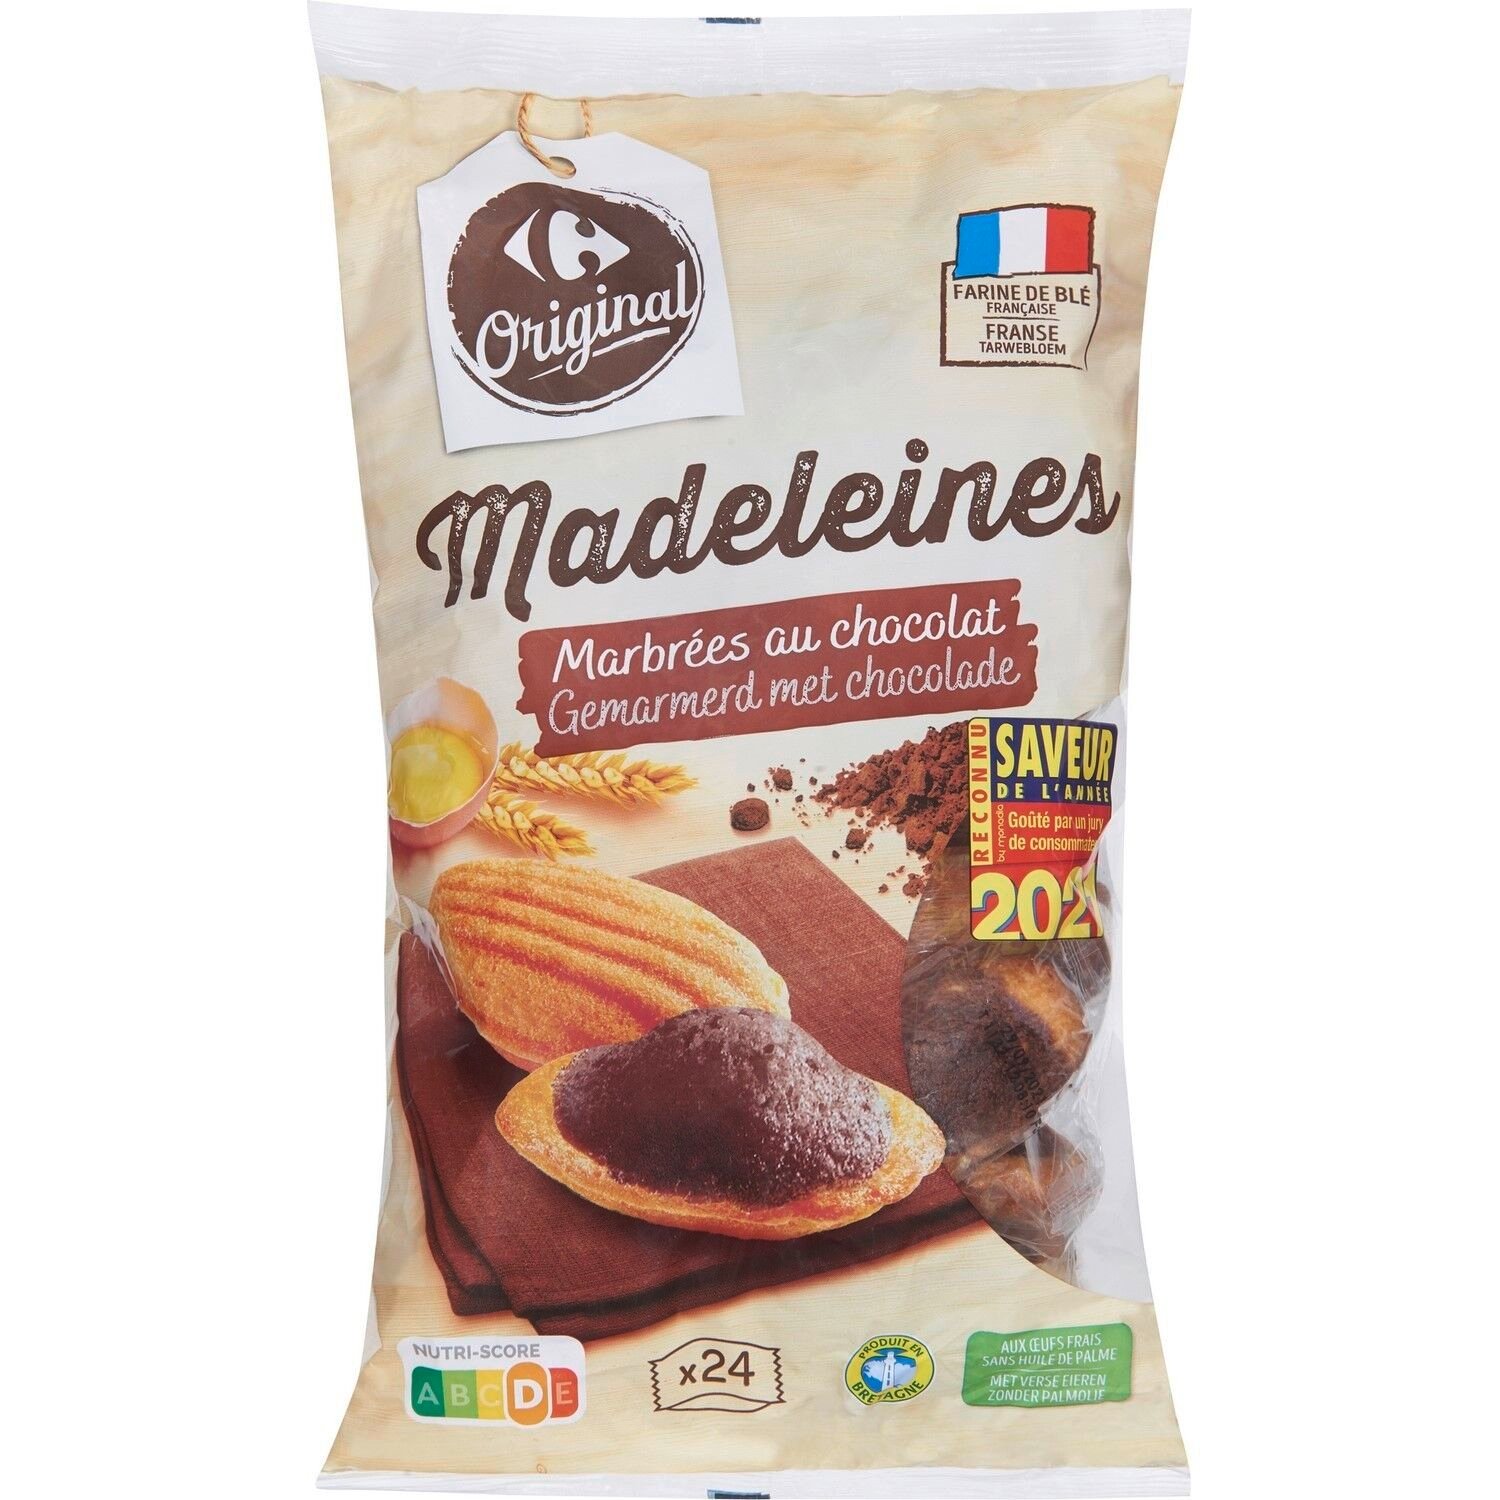 Madeleines nappées chocolat CARREFOUR ORIGINAL